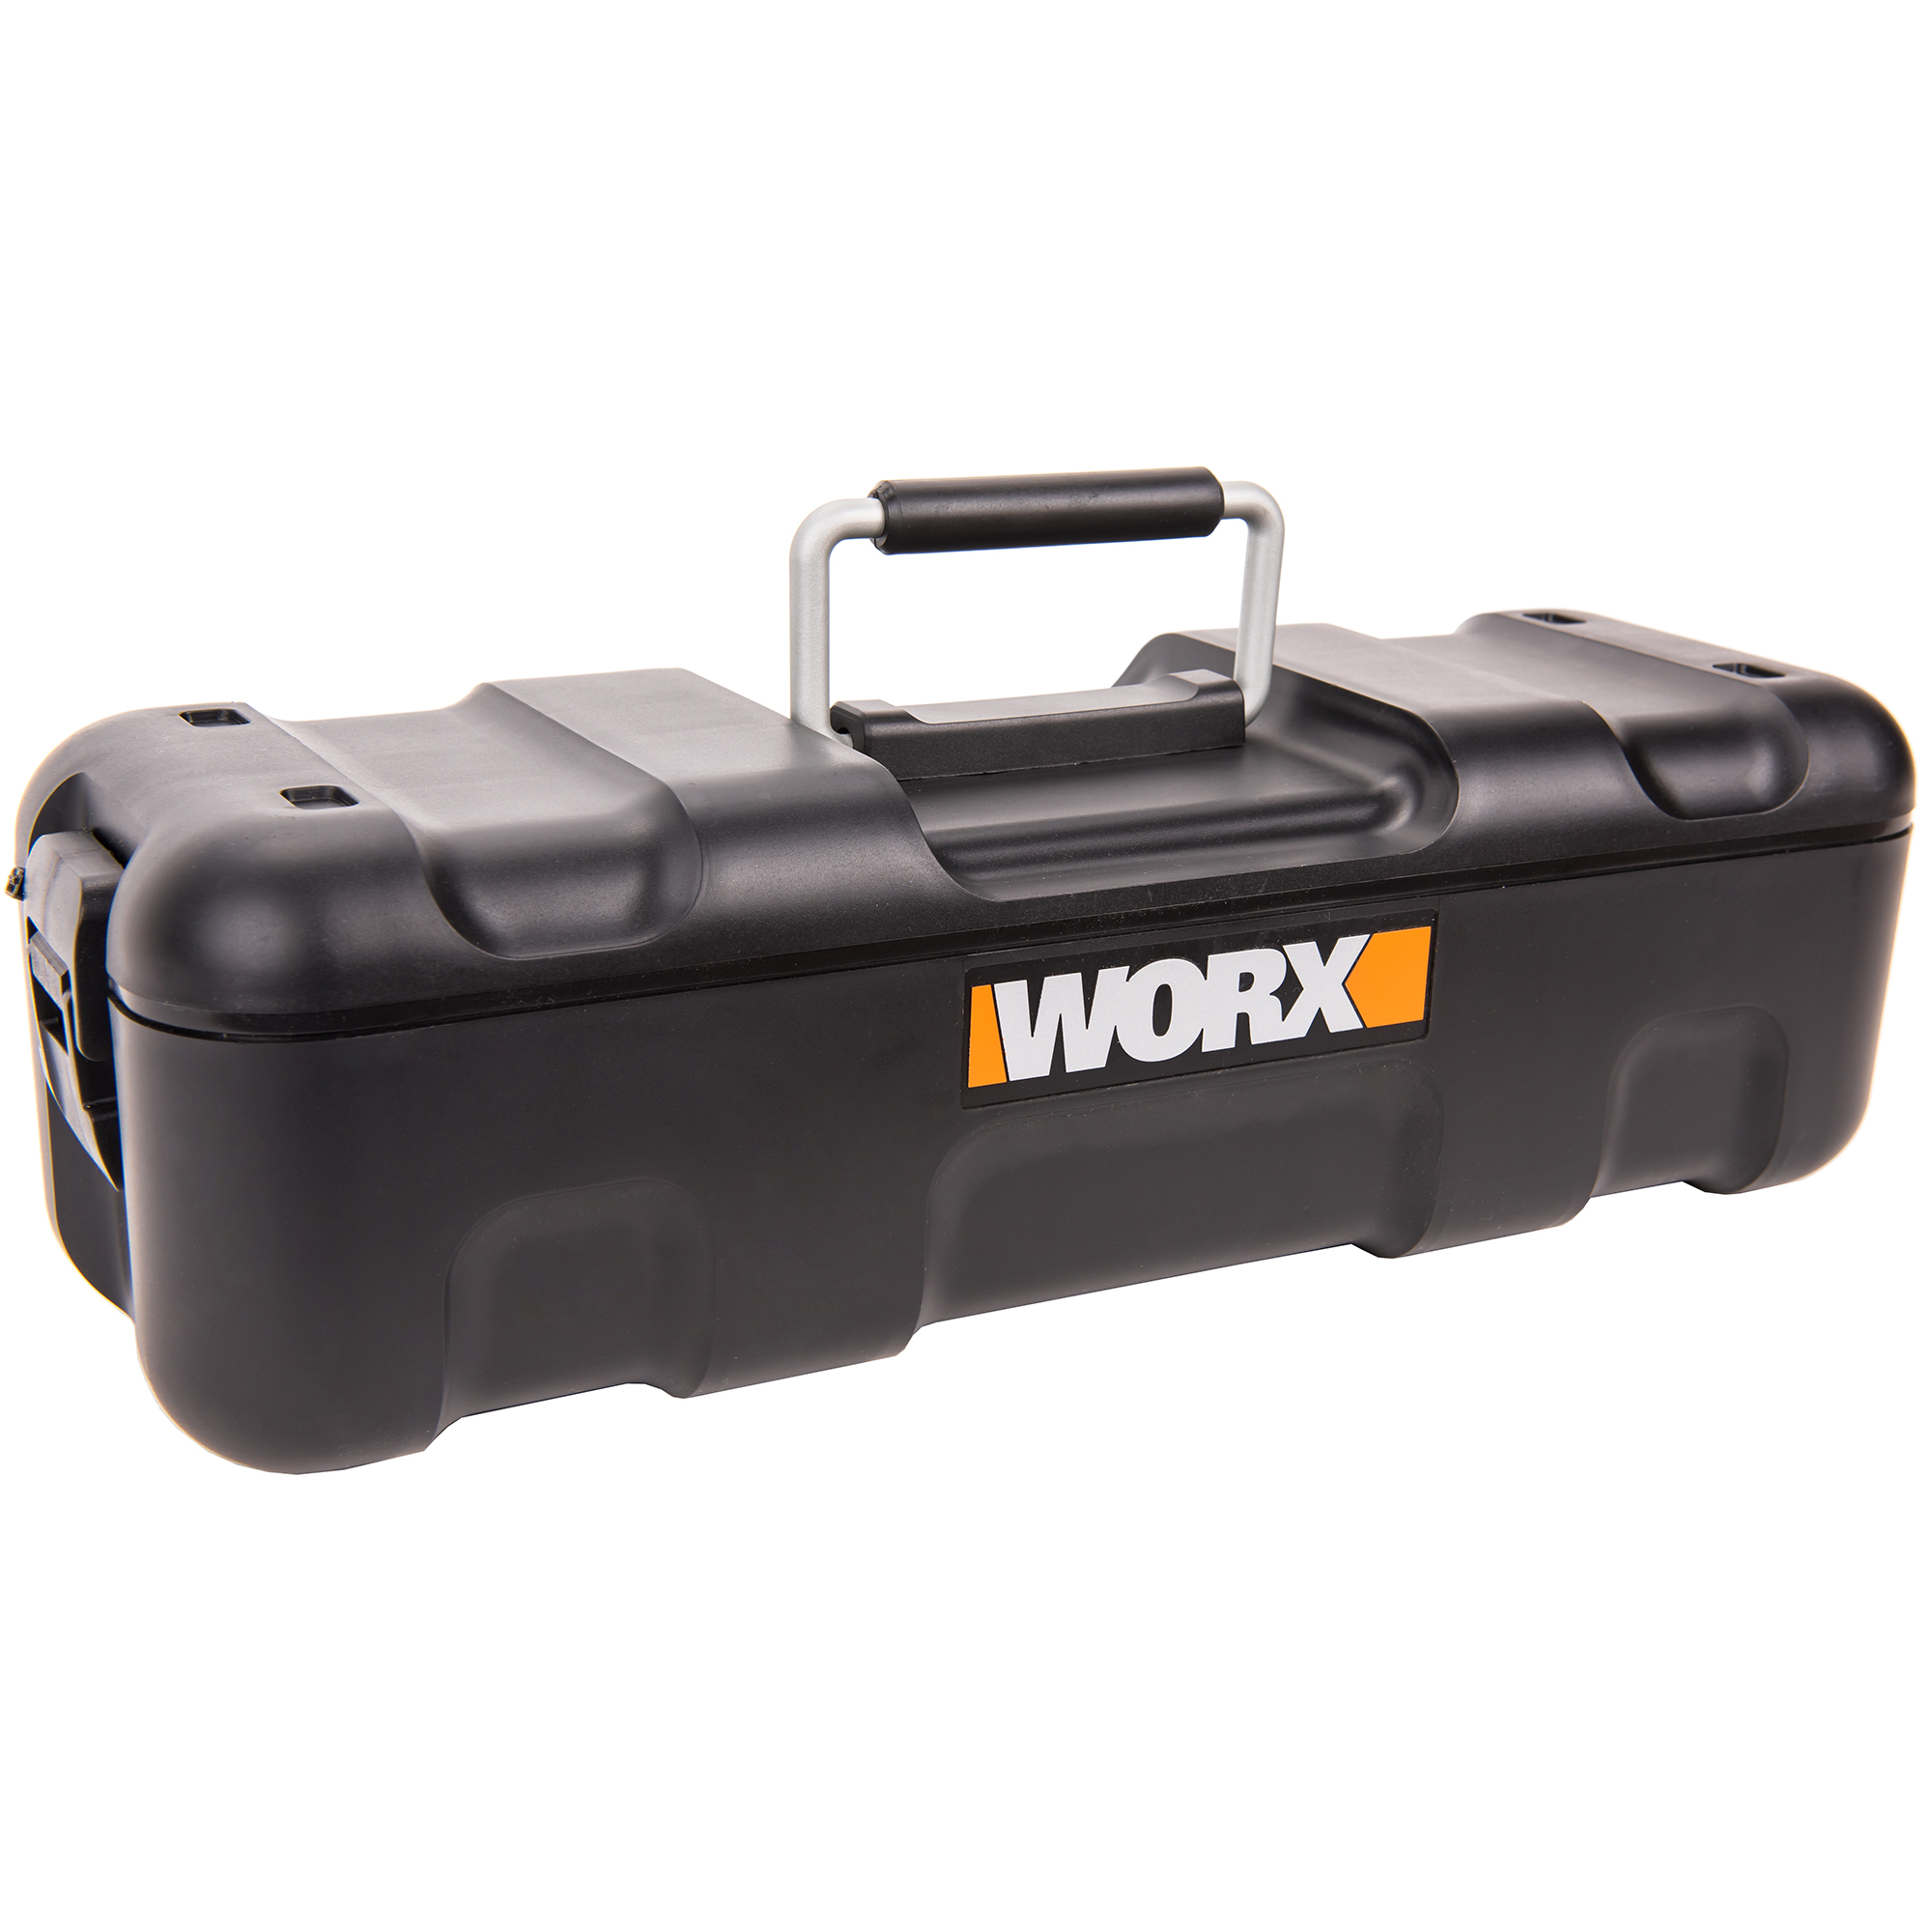 Многофункциональный инструмент WORX WX686, цвет оранжевый - фото 9